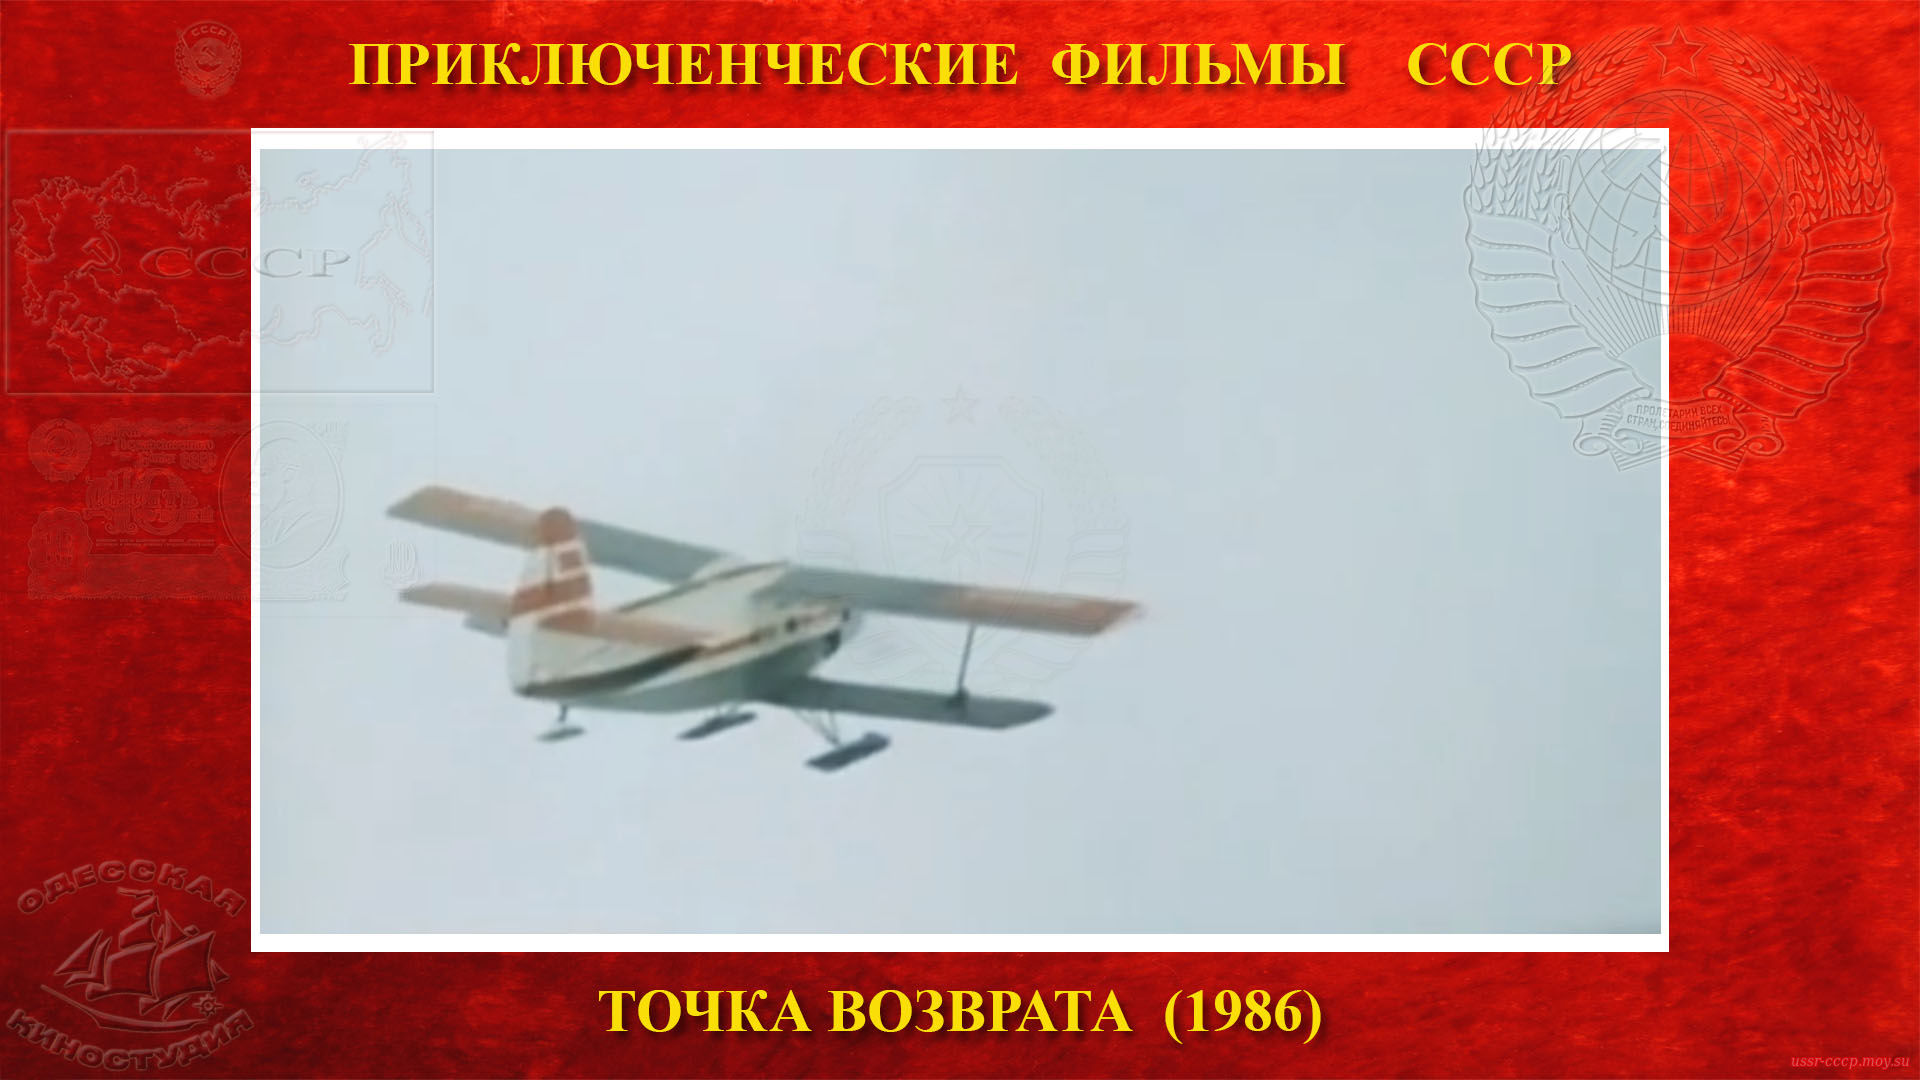 Точка возврата — Блинов вылетает на поиски, впереди туман, провели 7 часов в воздухе и не каких результатов.